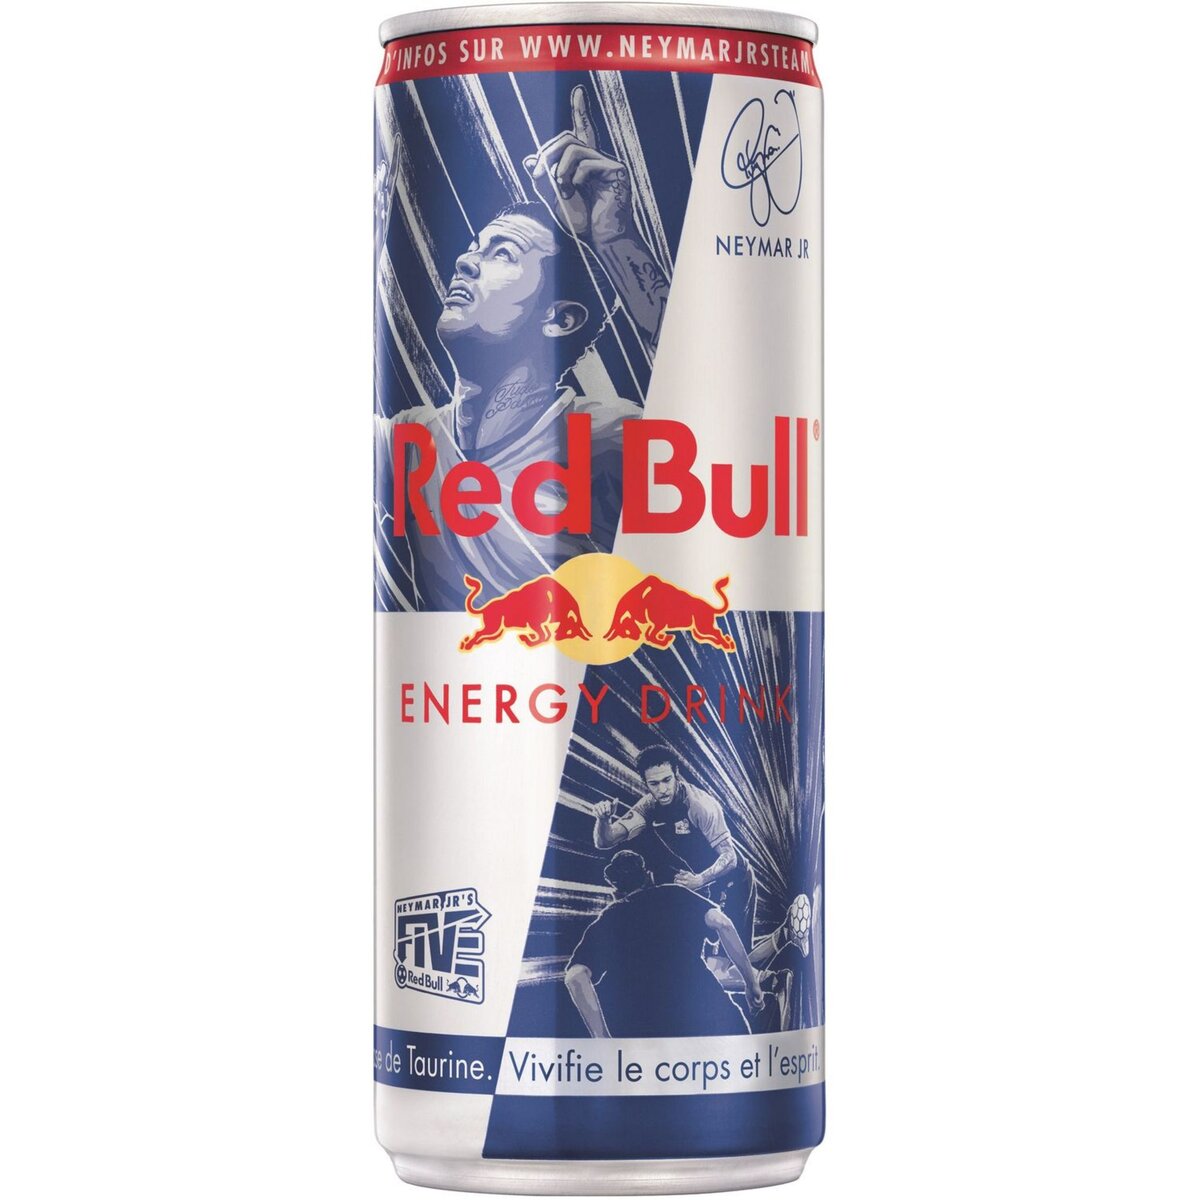 RED BULL Red Bull regular energy drink Neymar 25cl